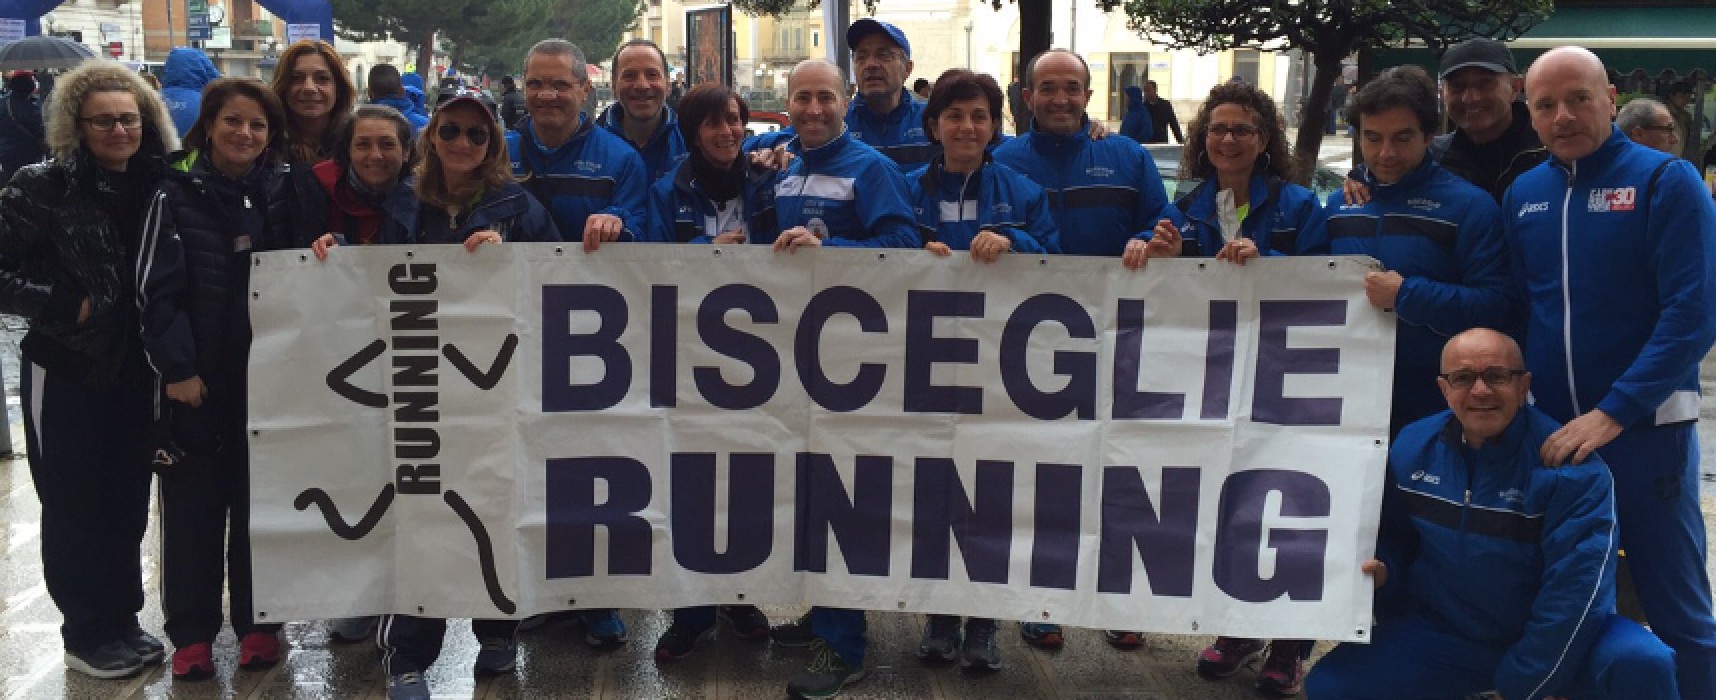 Maratona di Roma, Bisceglie Running c’era / FOTO